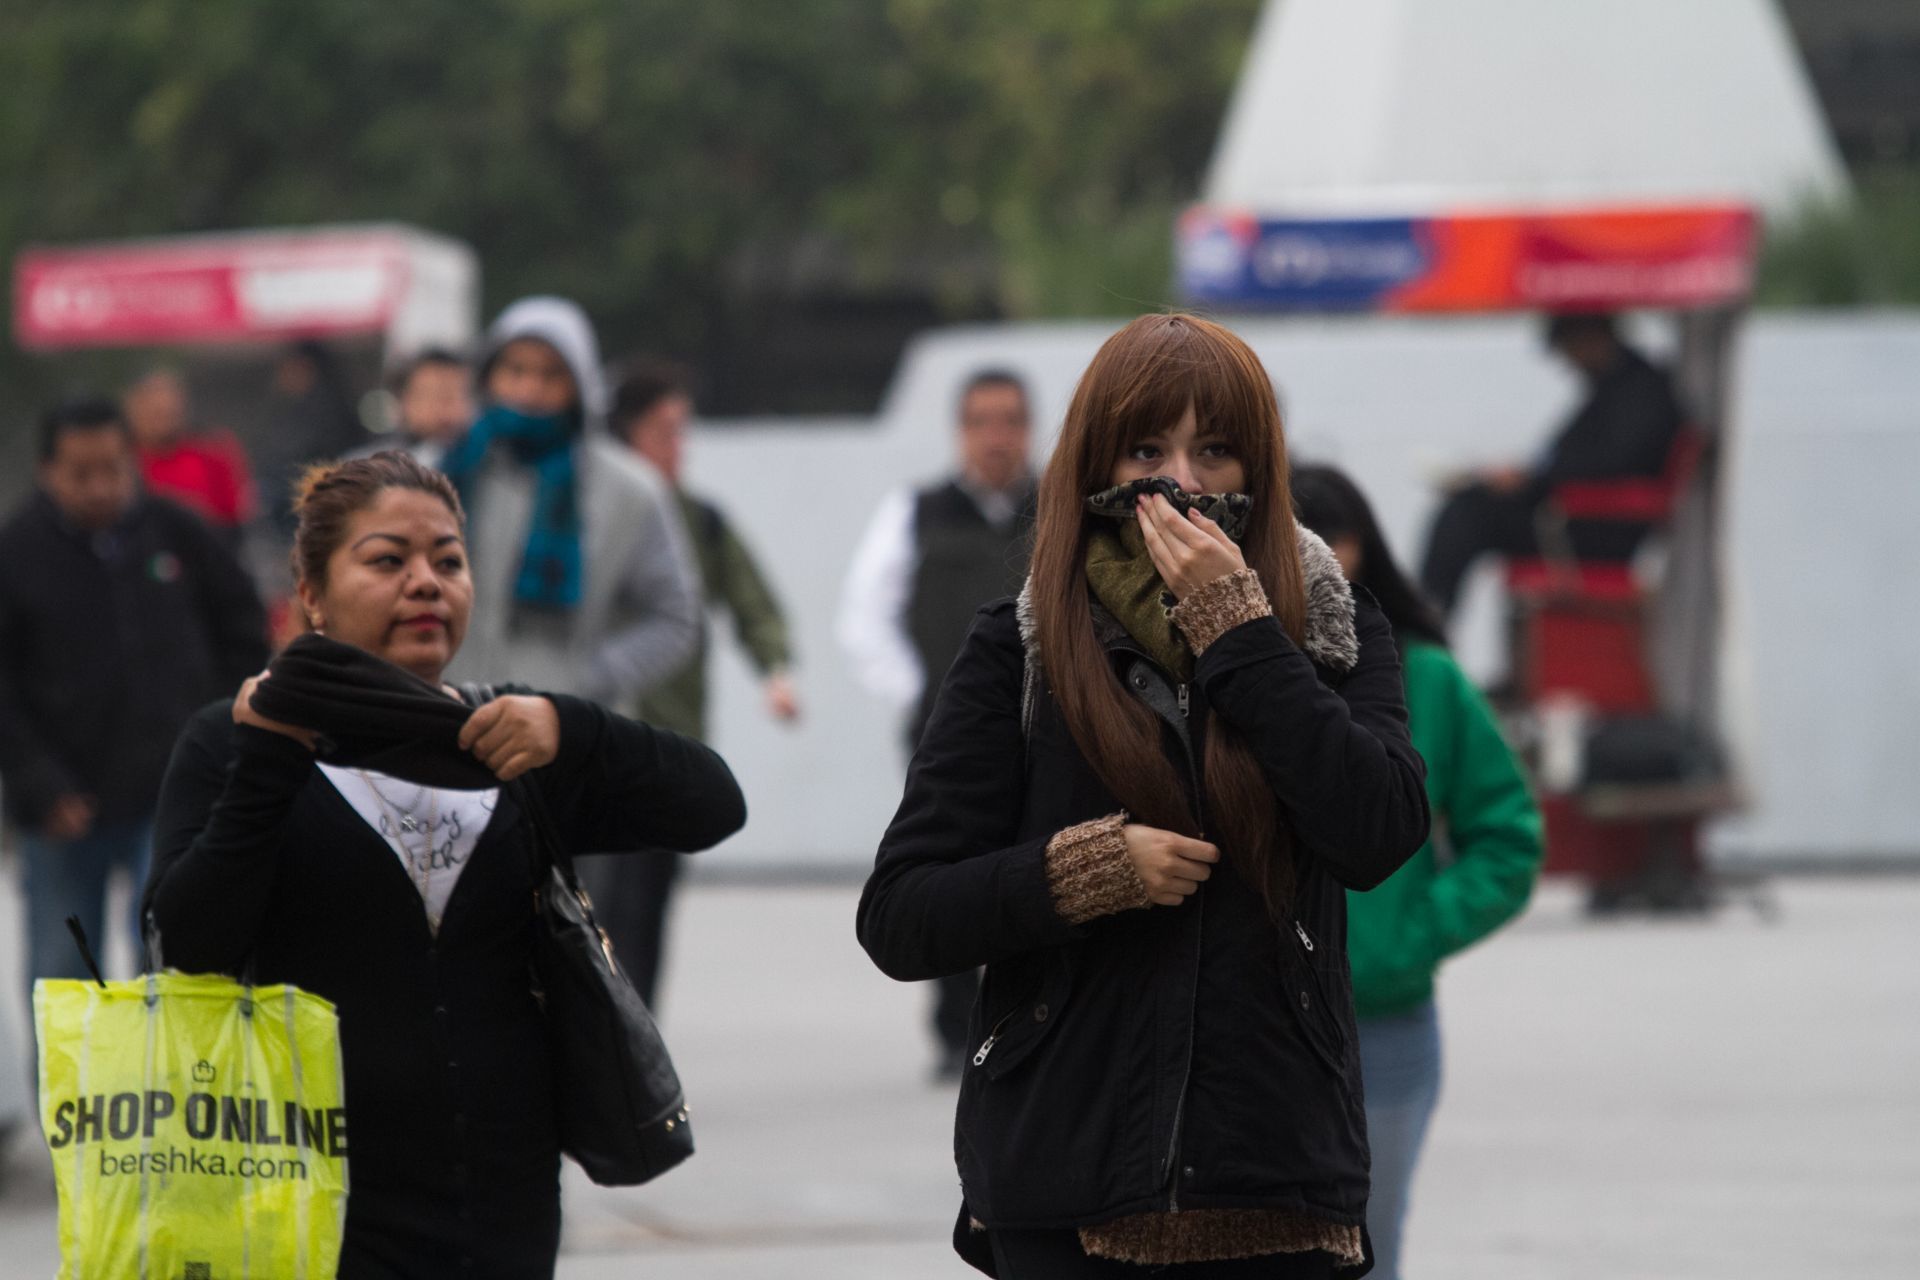 CIUDAD DE MÉXICO, 09ENERO2017.- Un intenso frío se sintió por la mañana en la capital, lo que obligó que los ciudadanos salieran abrigados con abrigos, chamarras y bufandas, el termómetro marcó los 3 grados centígrados, esto provocado por el frente frío número 21. 
FOTO: ADOLFO VLADIMIR /CUARTOSCURO.COM